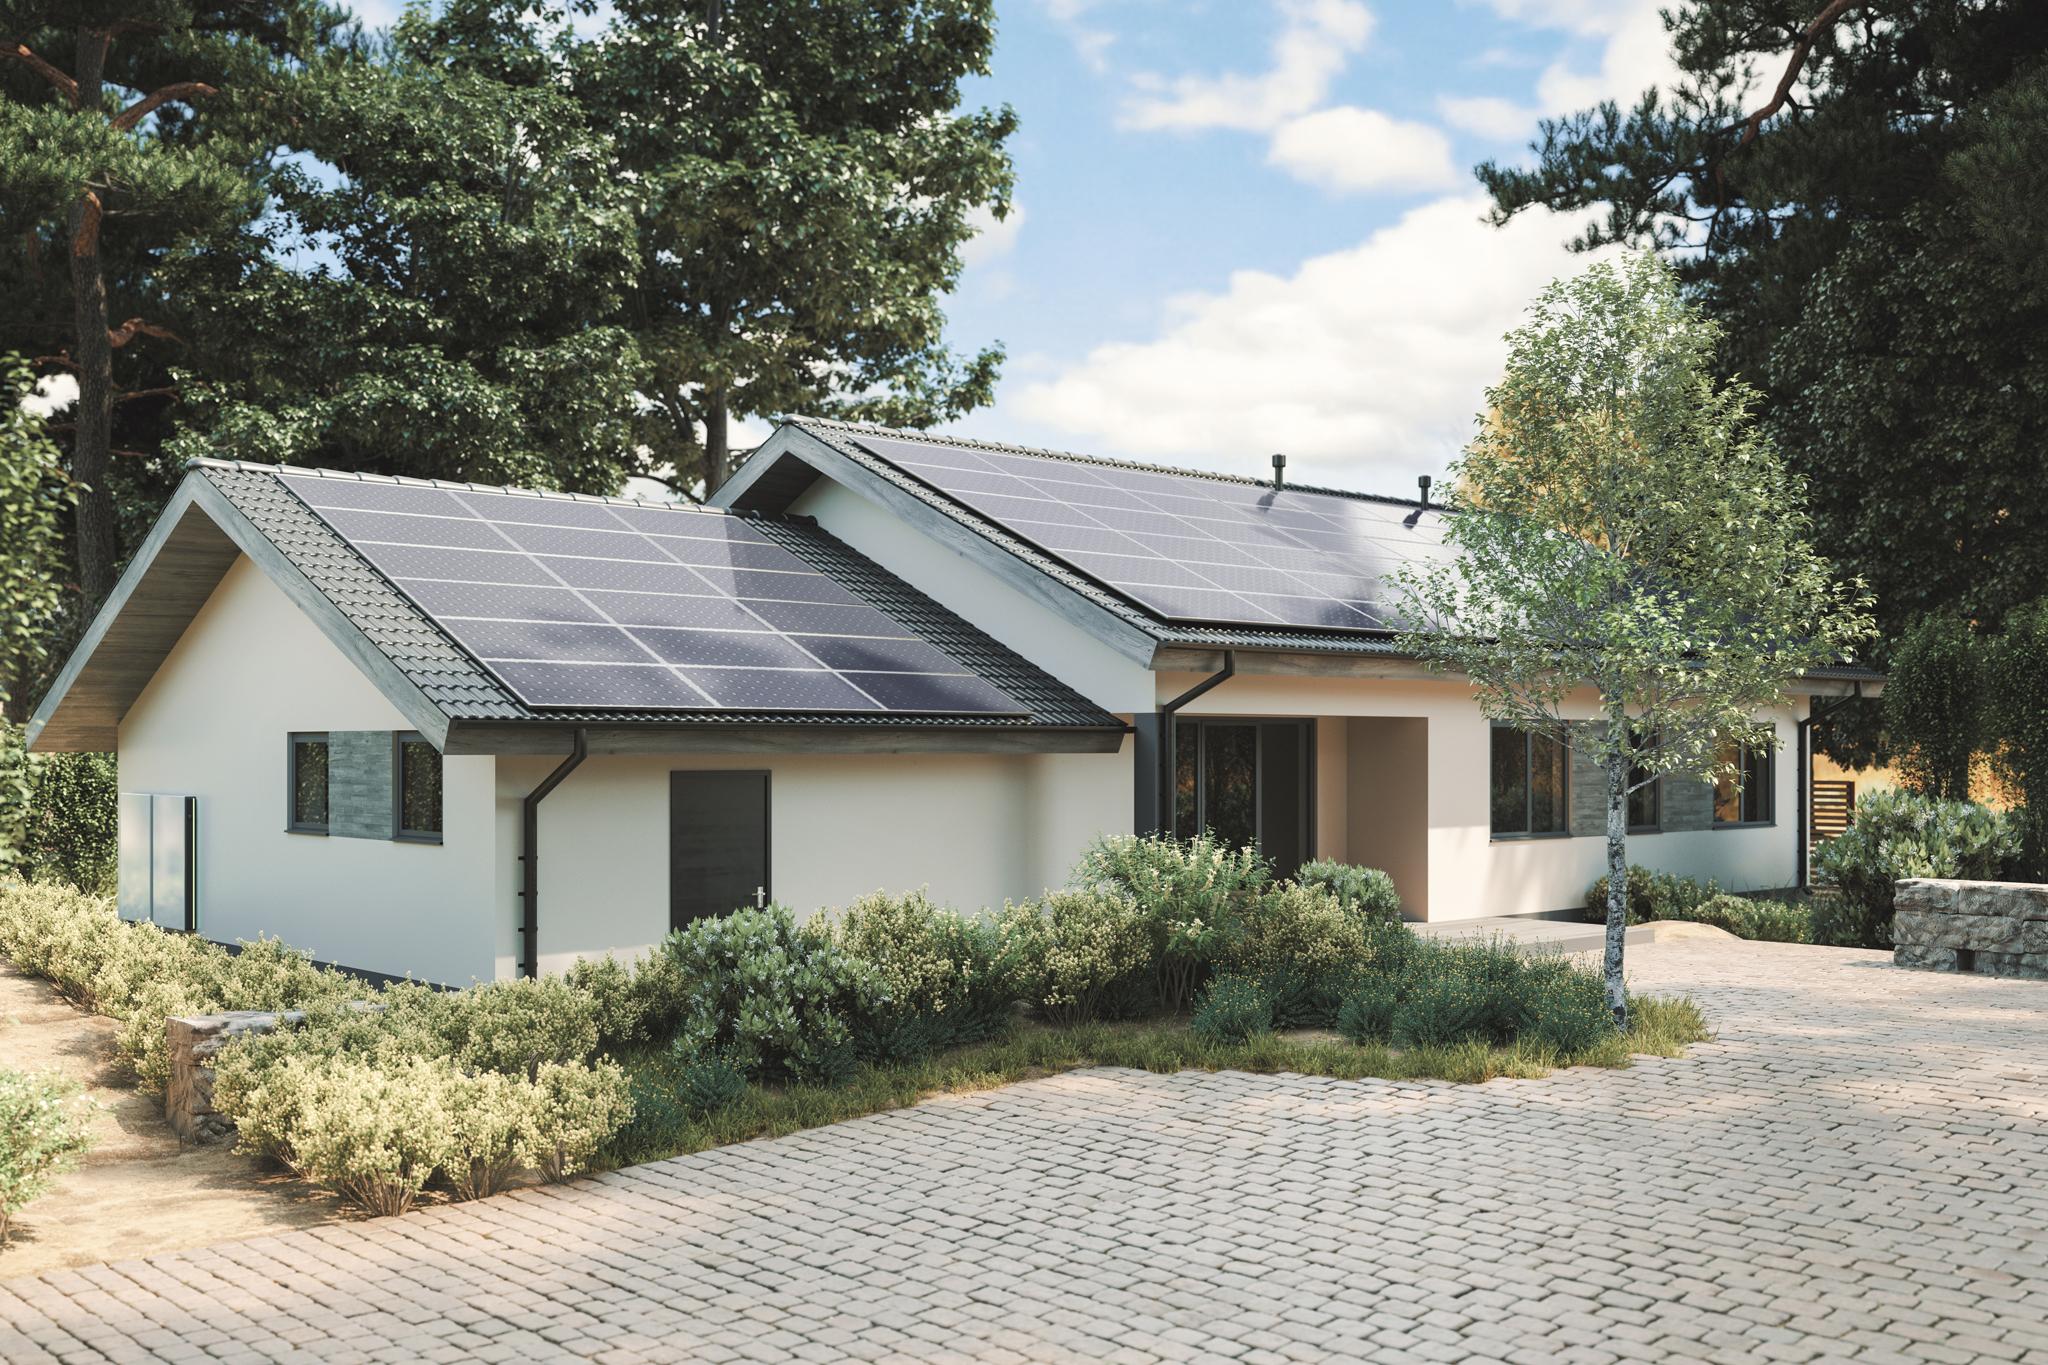 Einfamilienhaus mit PV-Anlage auf dem Dach - Macht eine 1 kW Solaranlage Sinn?